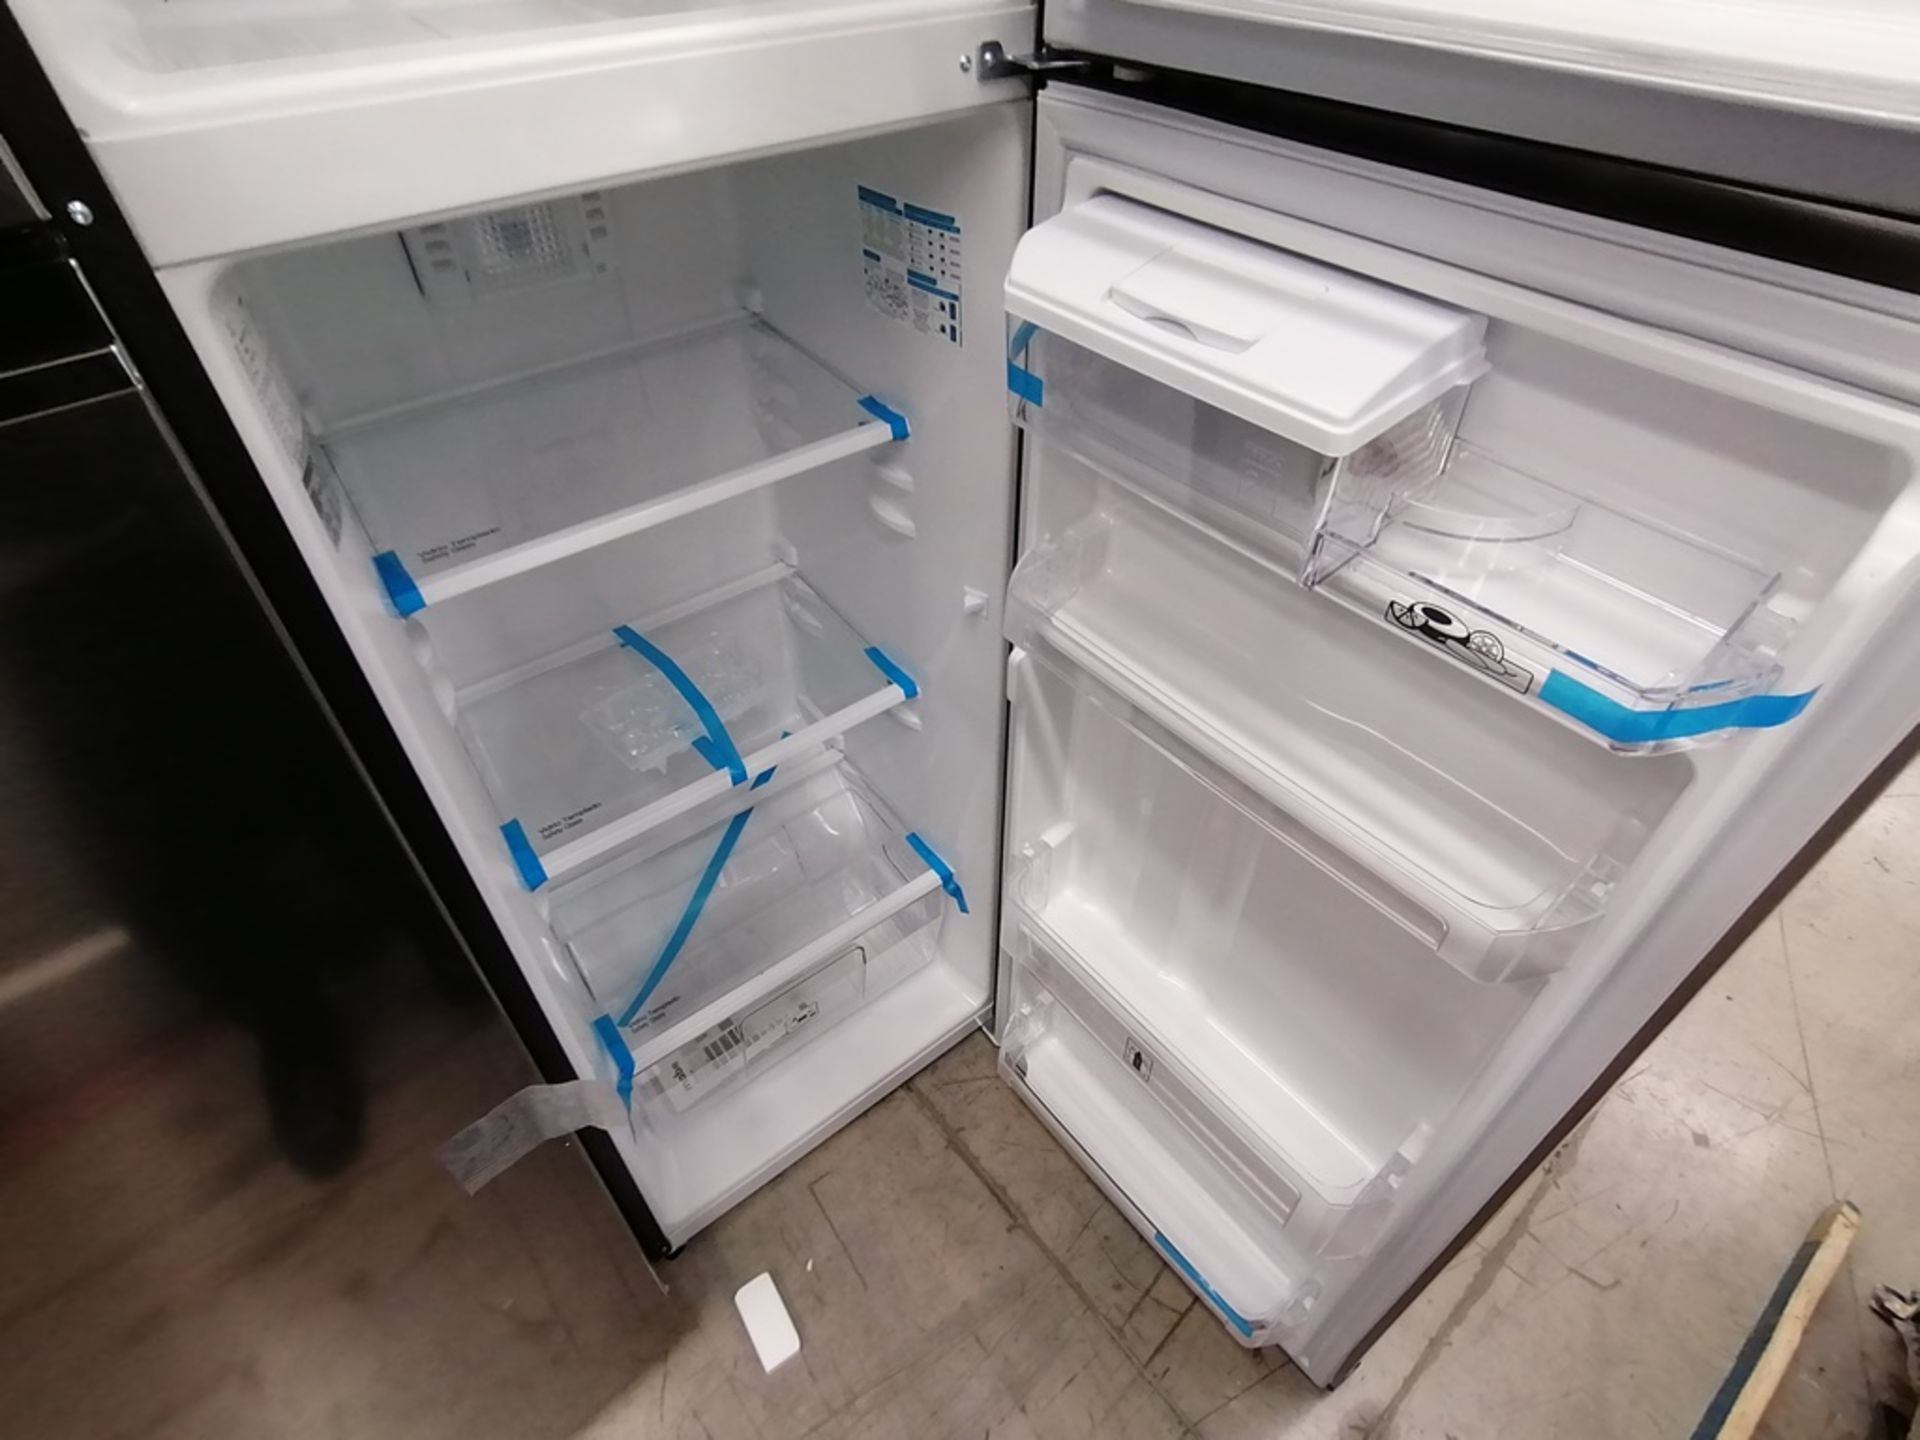 1 Refrigerador con Dispensador de Agua Marca Mabe, Color Gris, Modelo RMA300FJMR, Serie 2112B707142 - Image 12 of 13